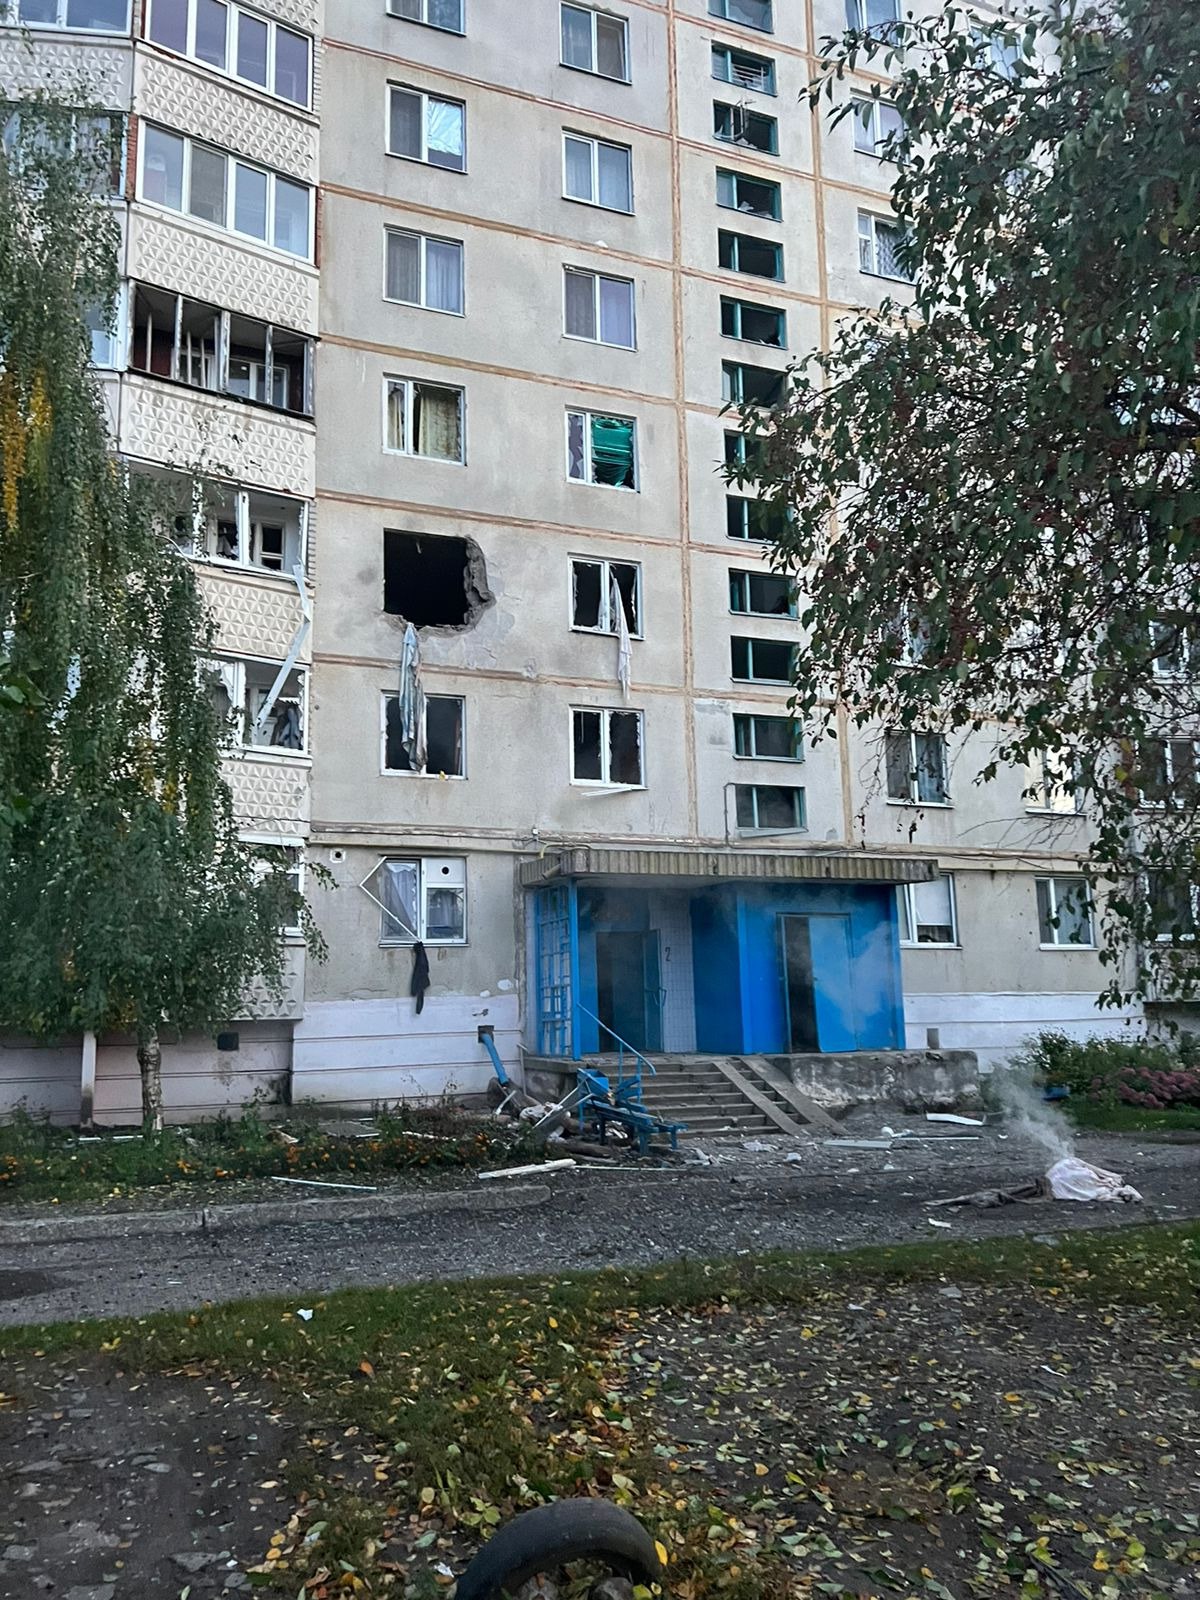 Волчанск обстреляли: снаряд попал в квартиру, есть погибшие (обновлено, фото)